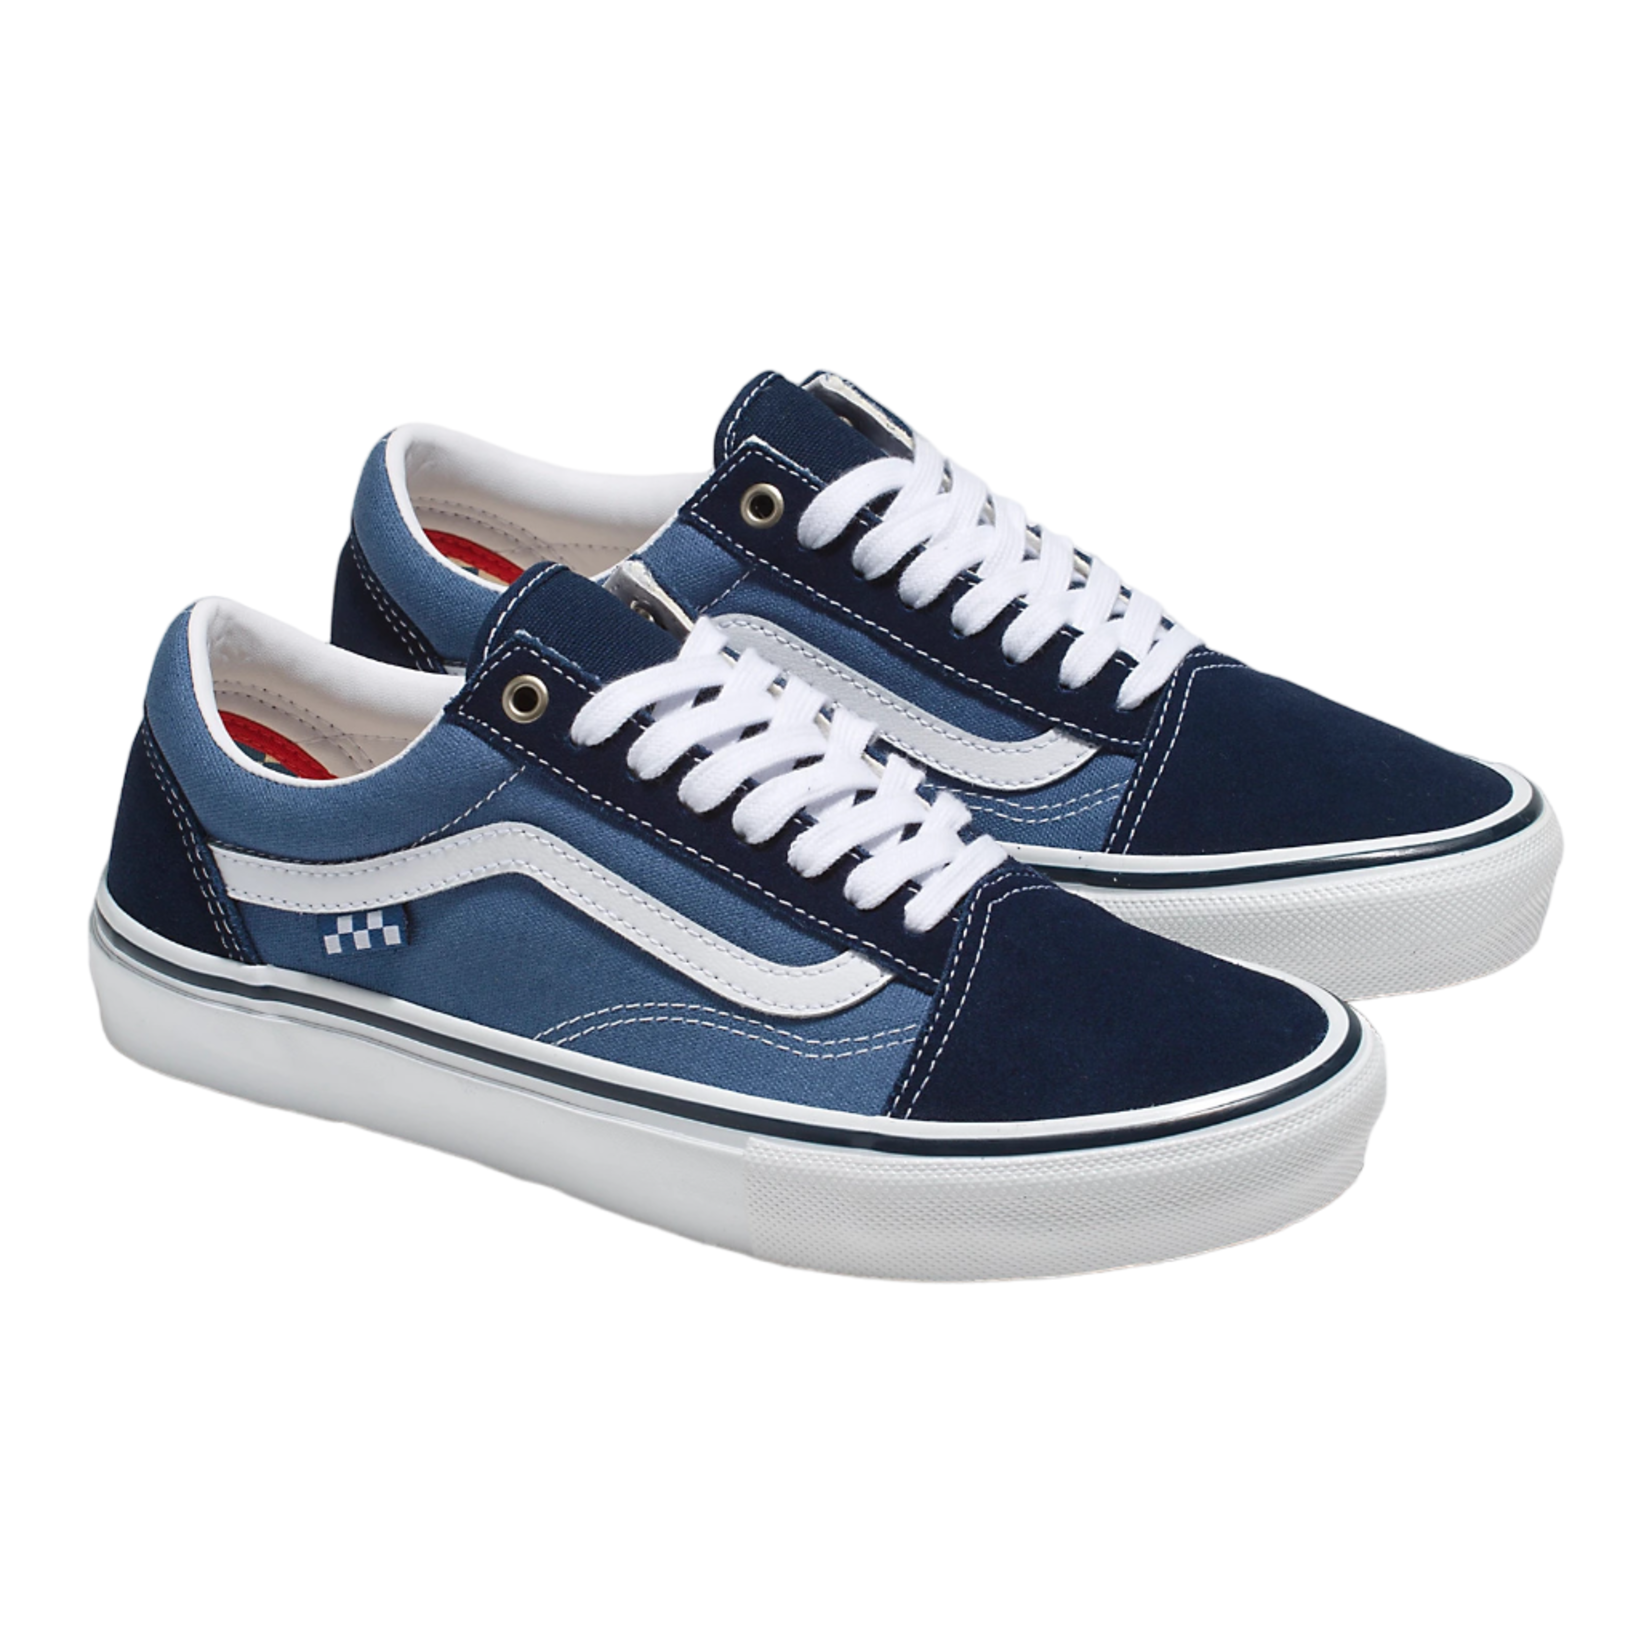 Vans Vans Skate Old Skool Shoes - Navy/White -